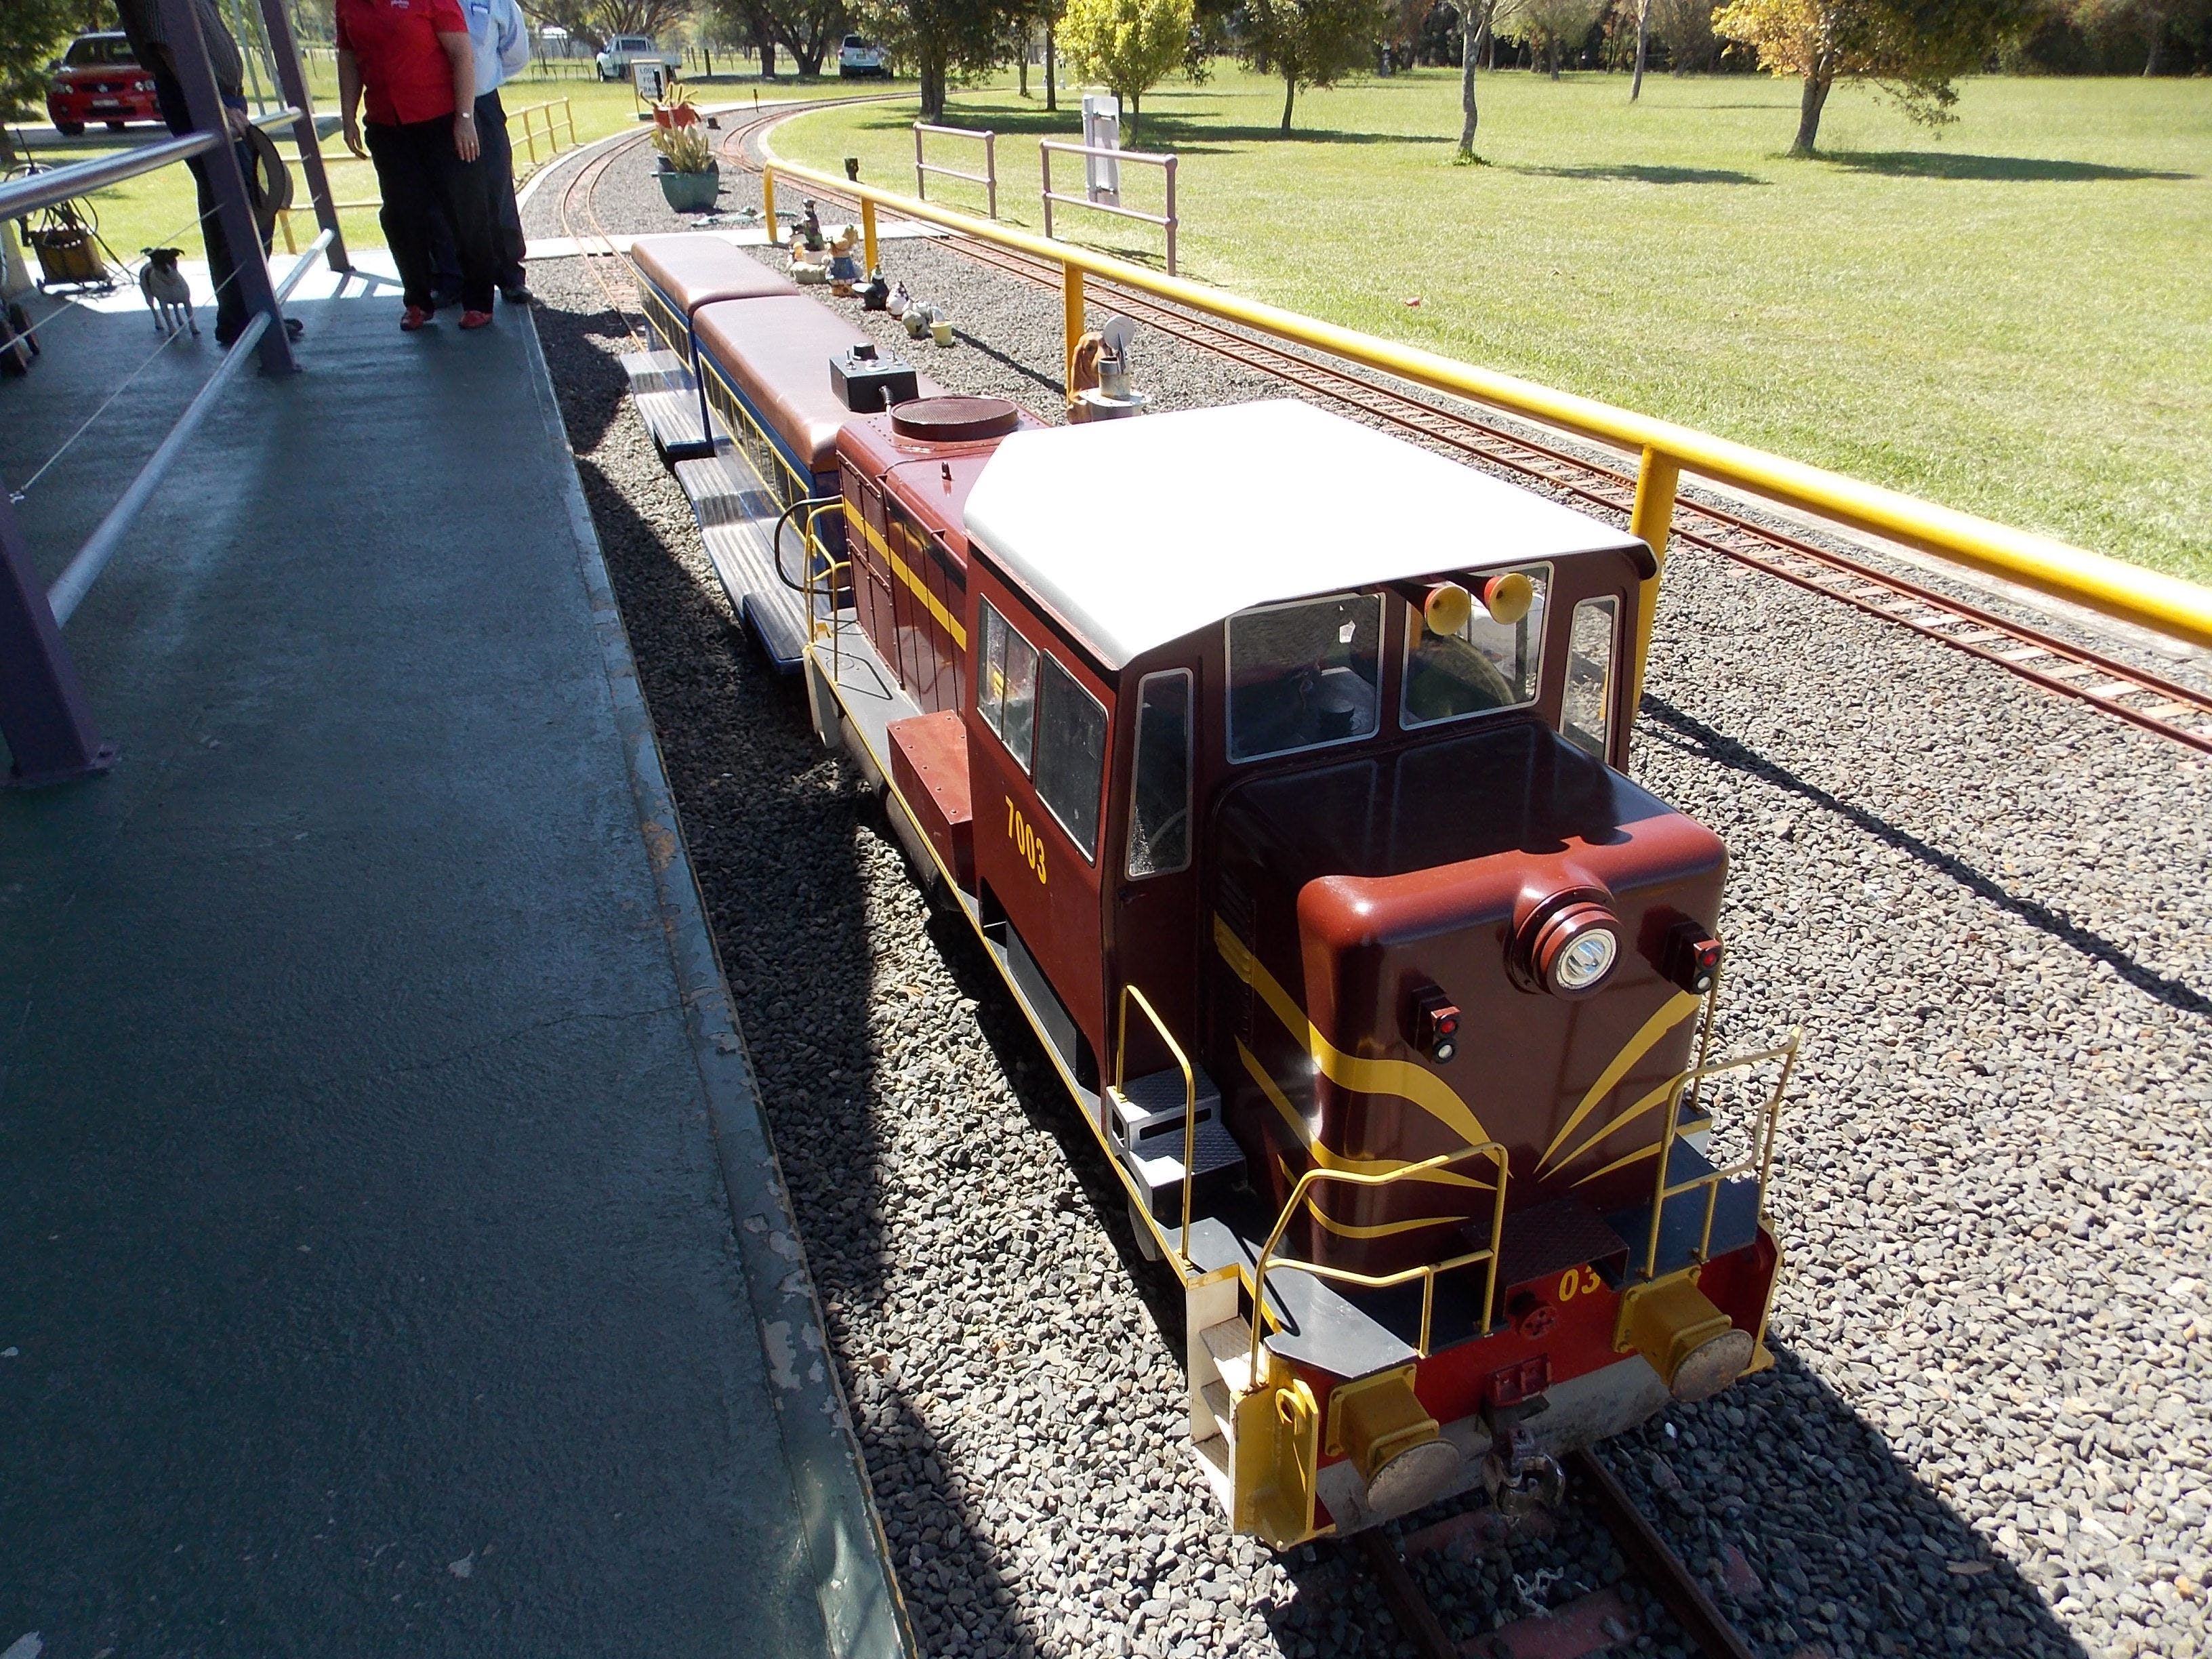 Penwood Miniature Railway - Accommodation Yamba